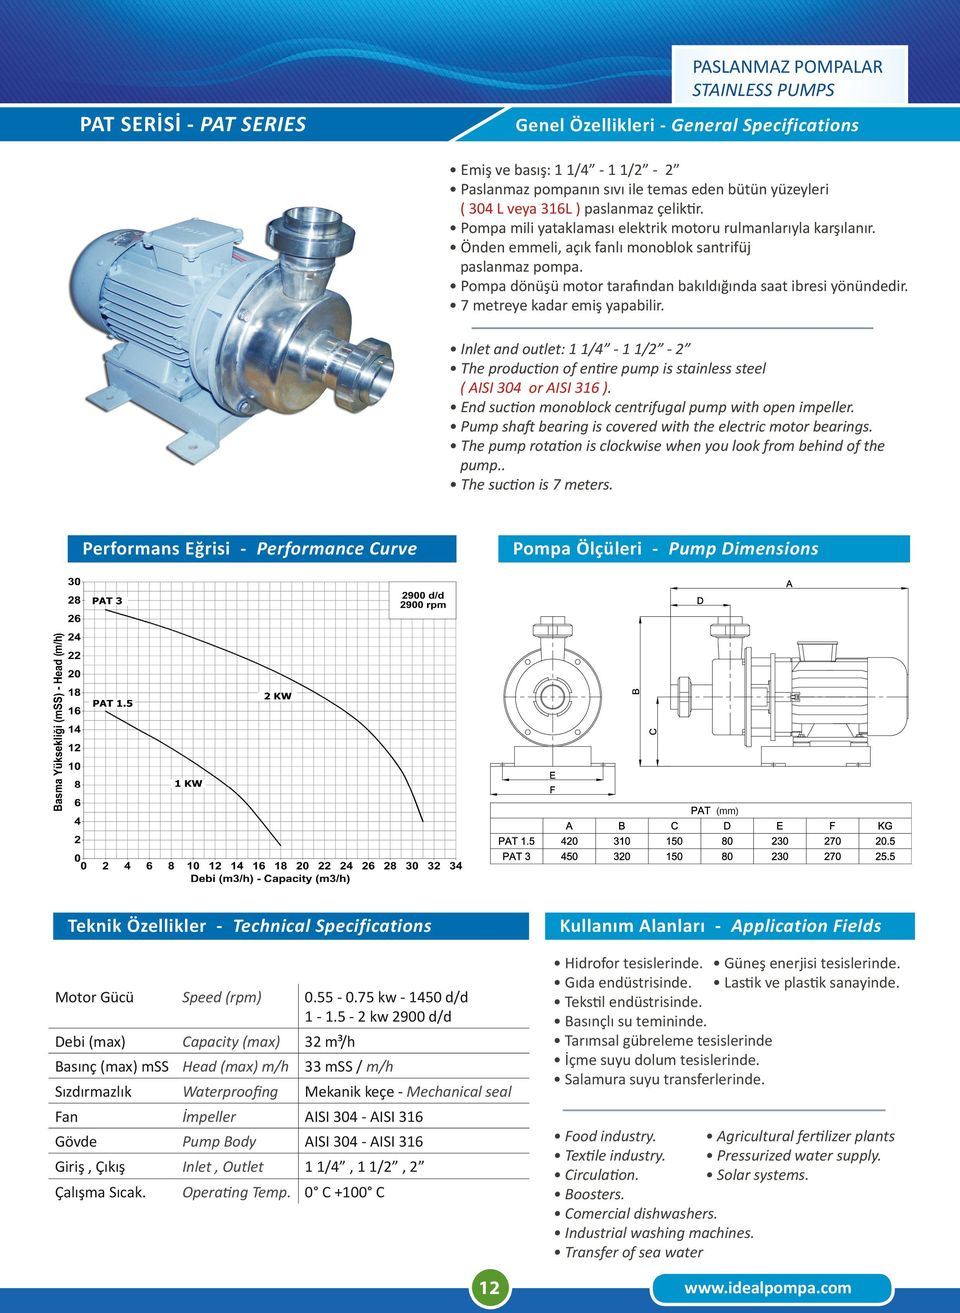 (mm) Motor Gücü Speed (rpm) 0.55-0.75 kw - 1450 d/d 1-1.